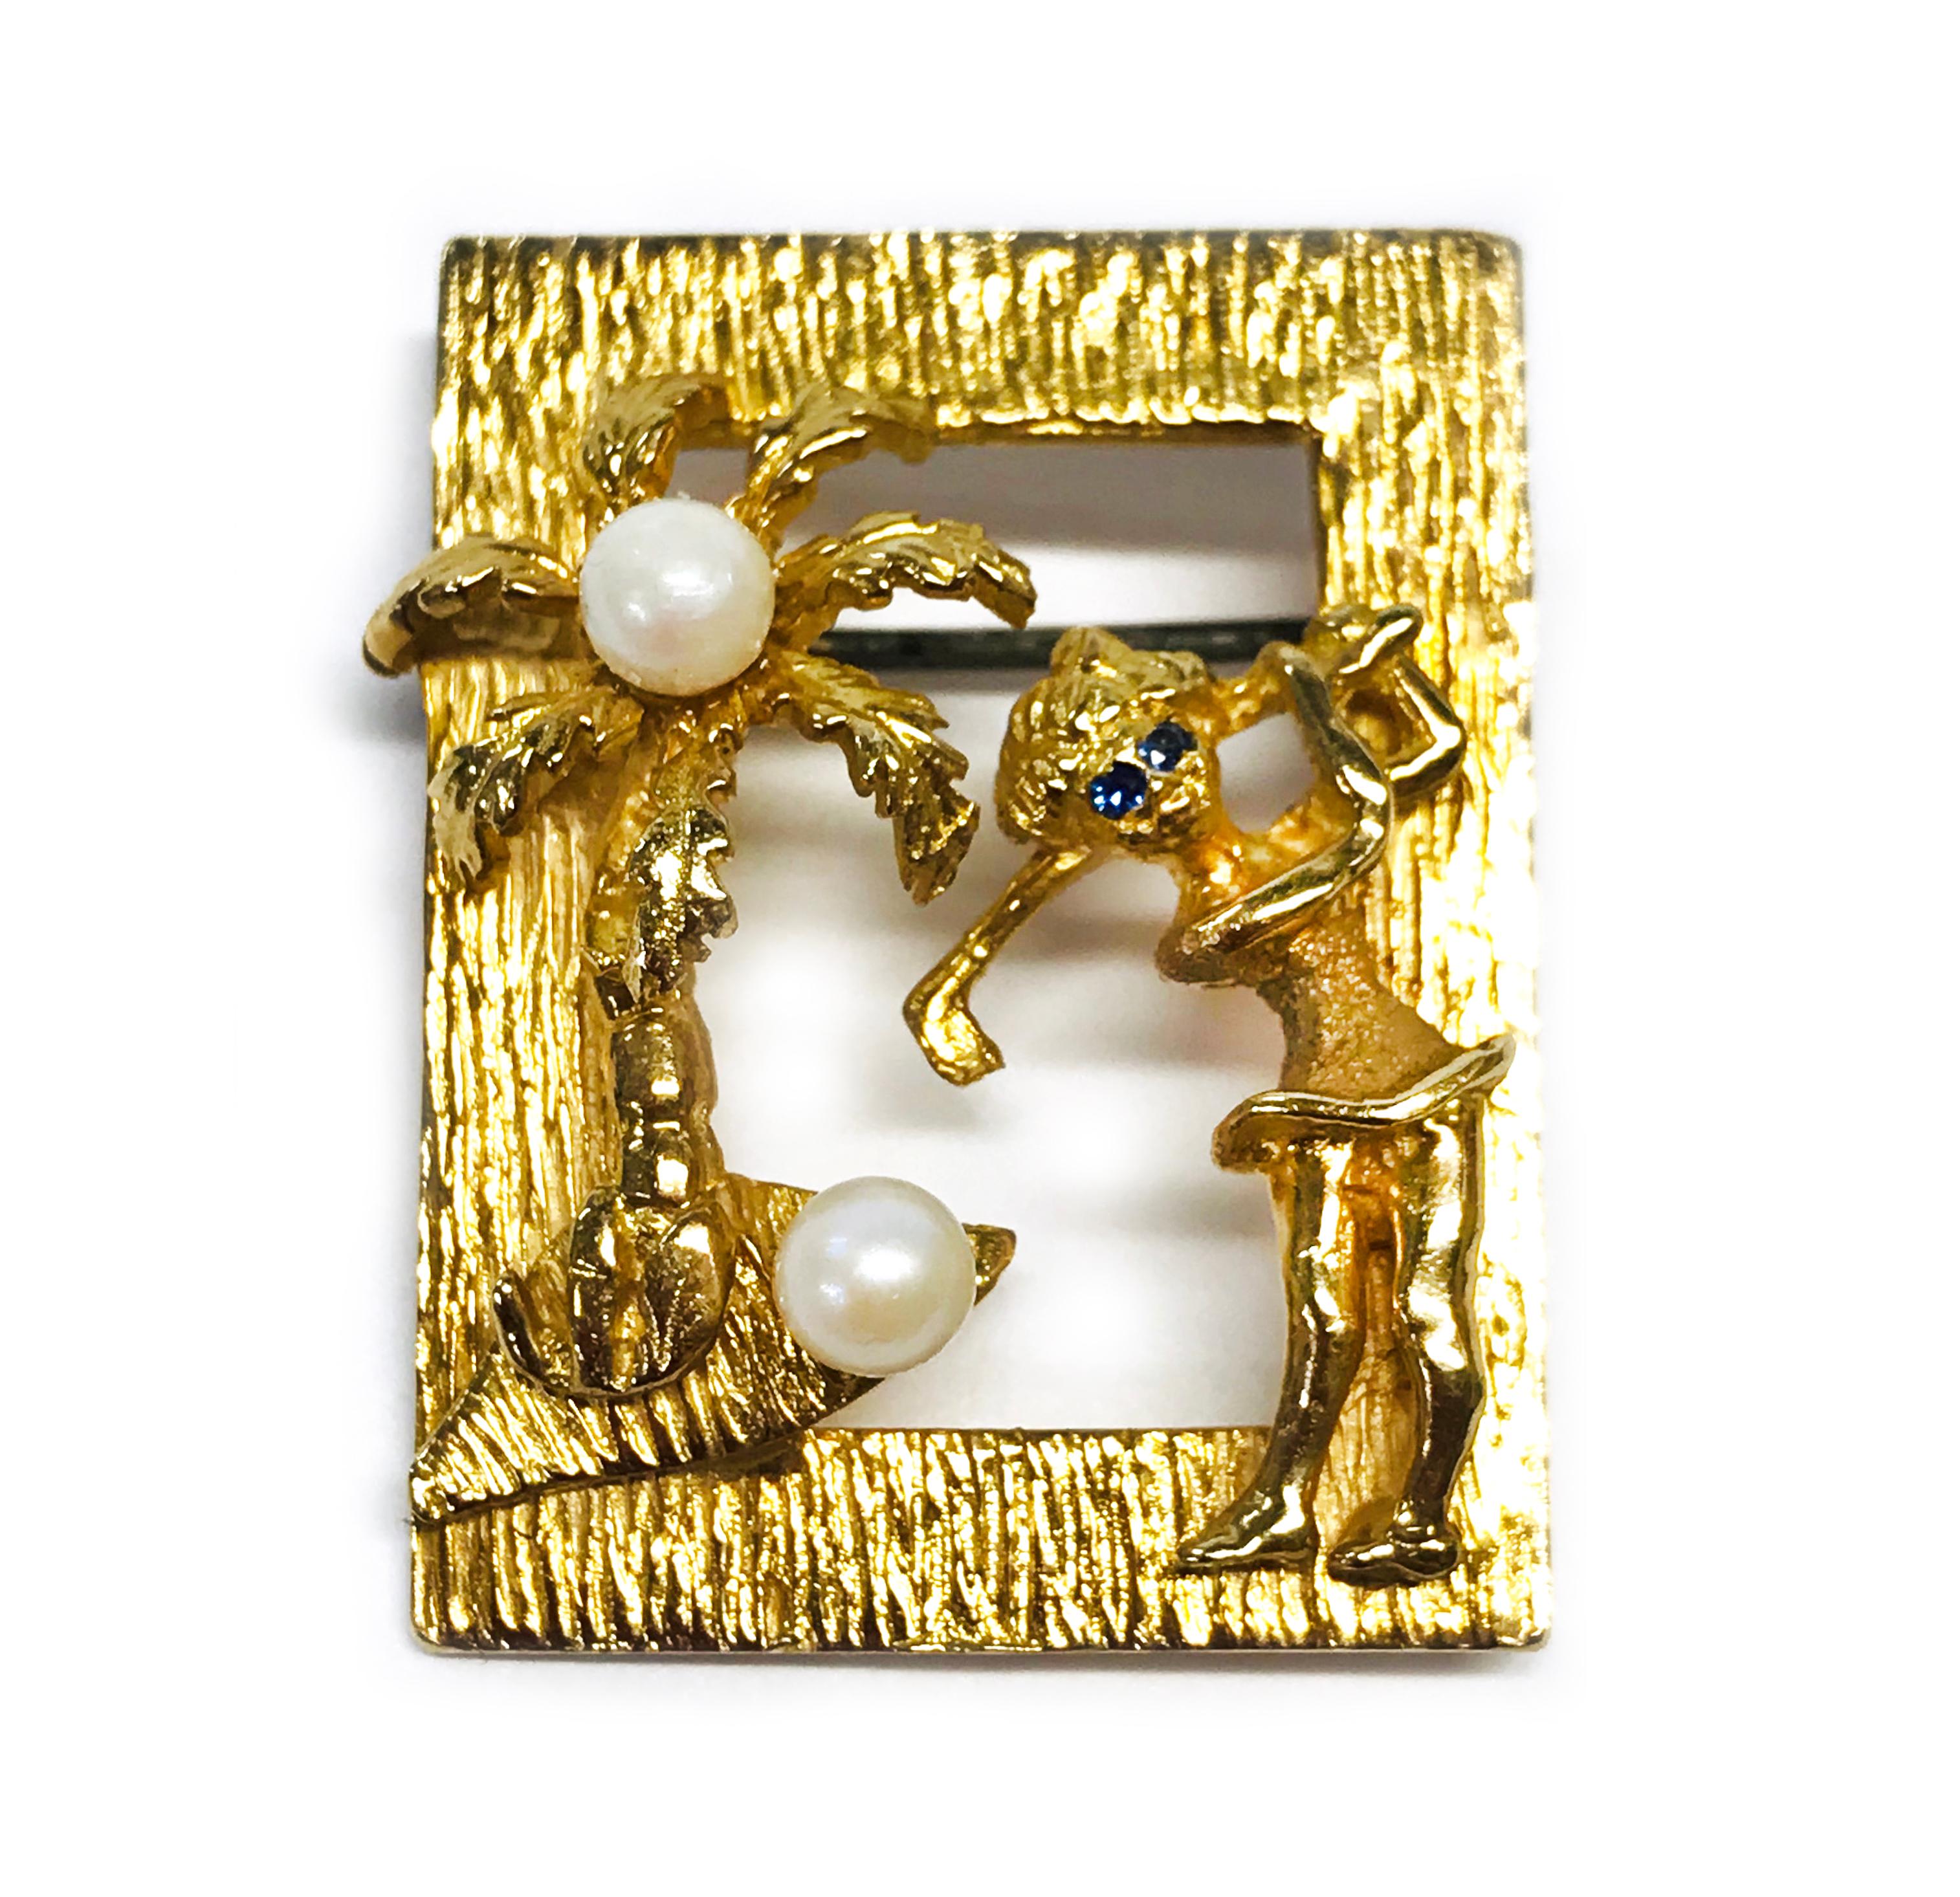 14 Karat Perle Saphir Golfer Brosche/Anstecker. Eine Palme und eine Golferin sind in einem goldenen Rahmen mit zwei 4 mm großen Perlen und blauen Saphiren für die Augen der Golferin gefasst. Auf der Rückseite ist 14K CJS gestempelt. Die